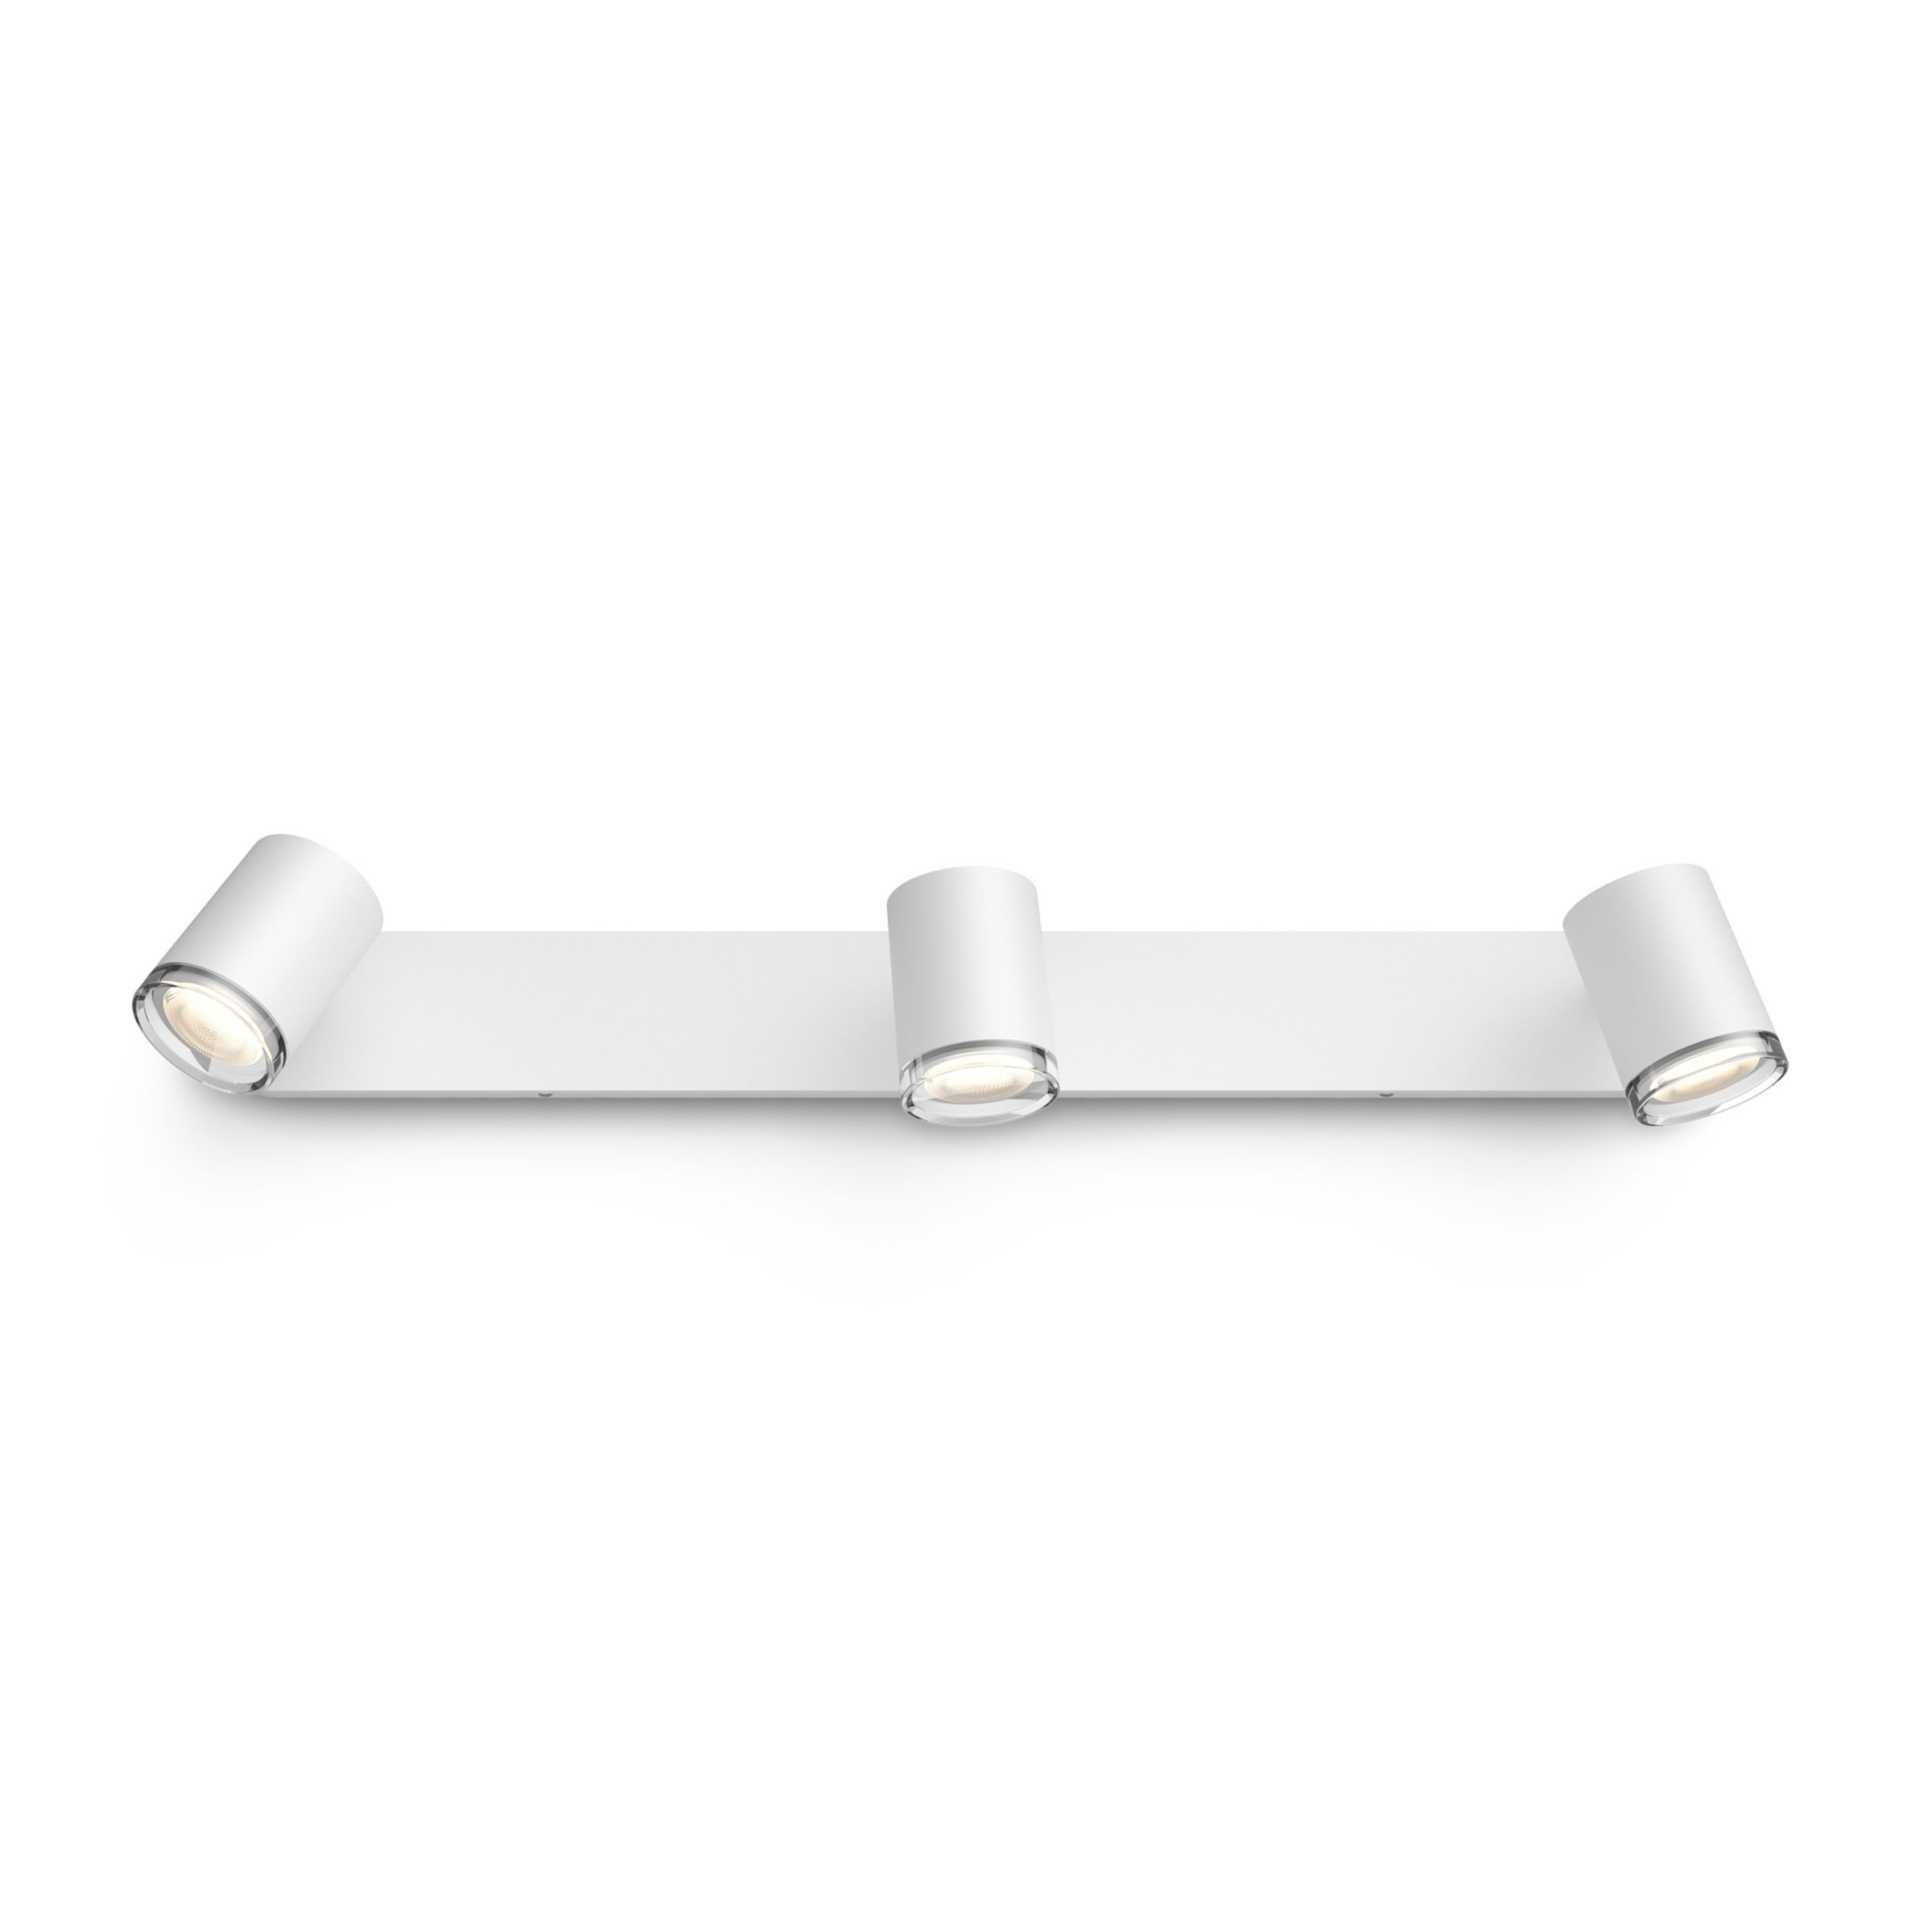 Hue Adore Deckenleuchte 3x5W Spots Längsform + Hue Dimmer Switch – Weiß | Philips  Hue DE